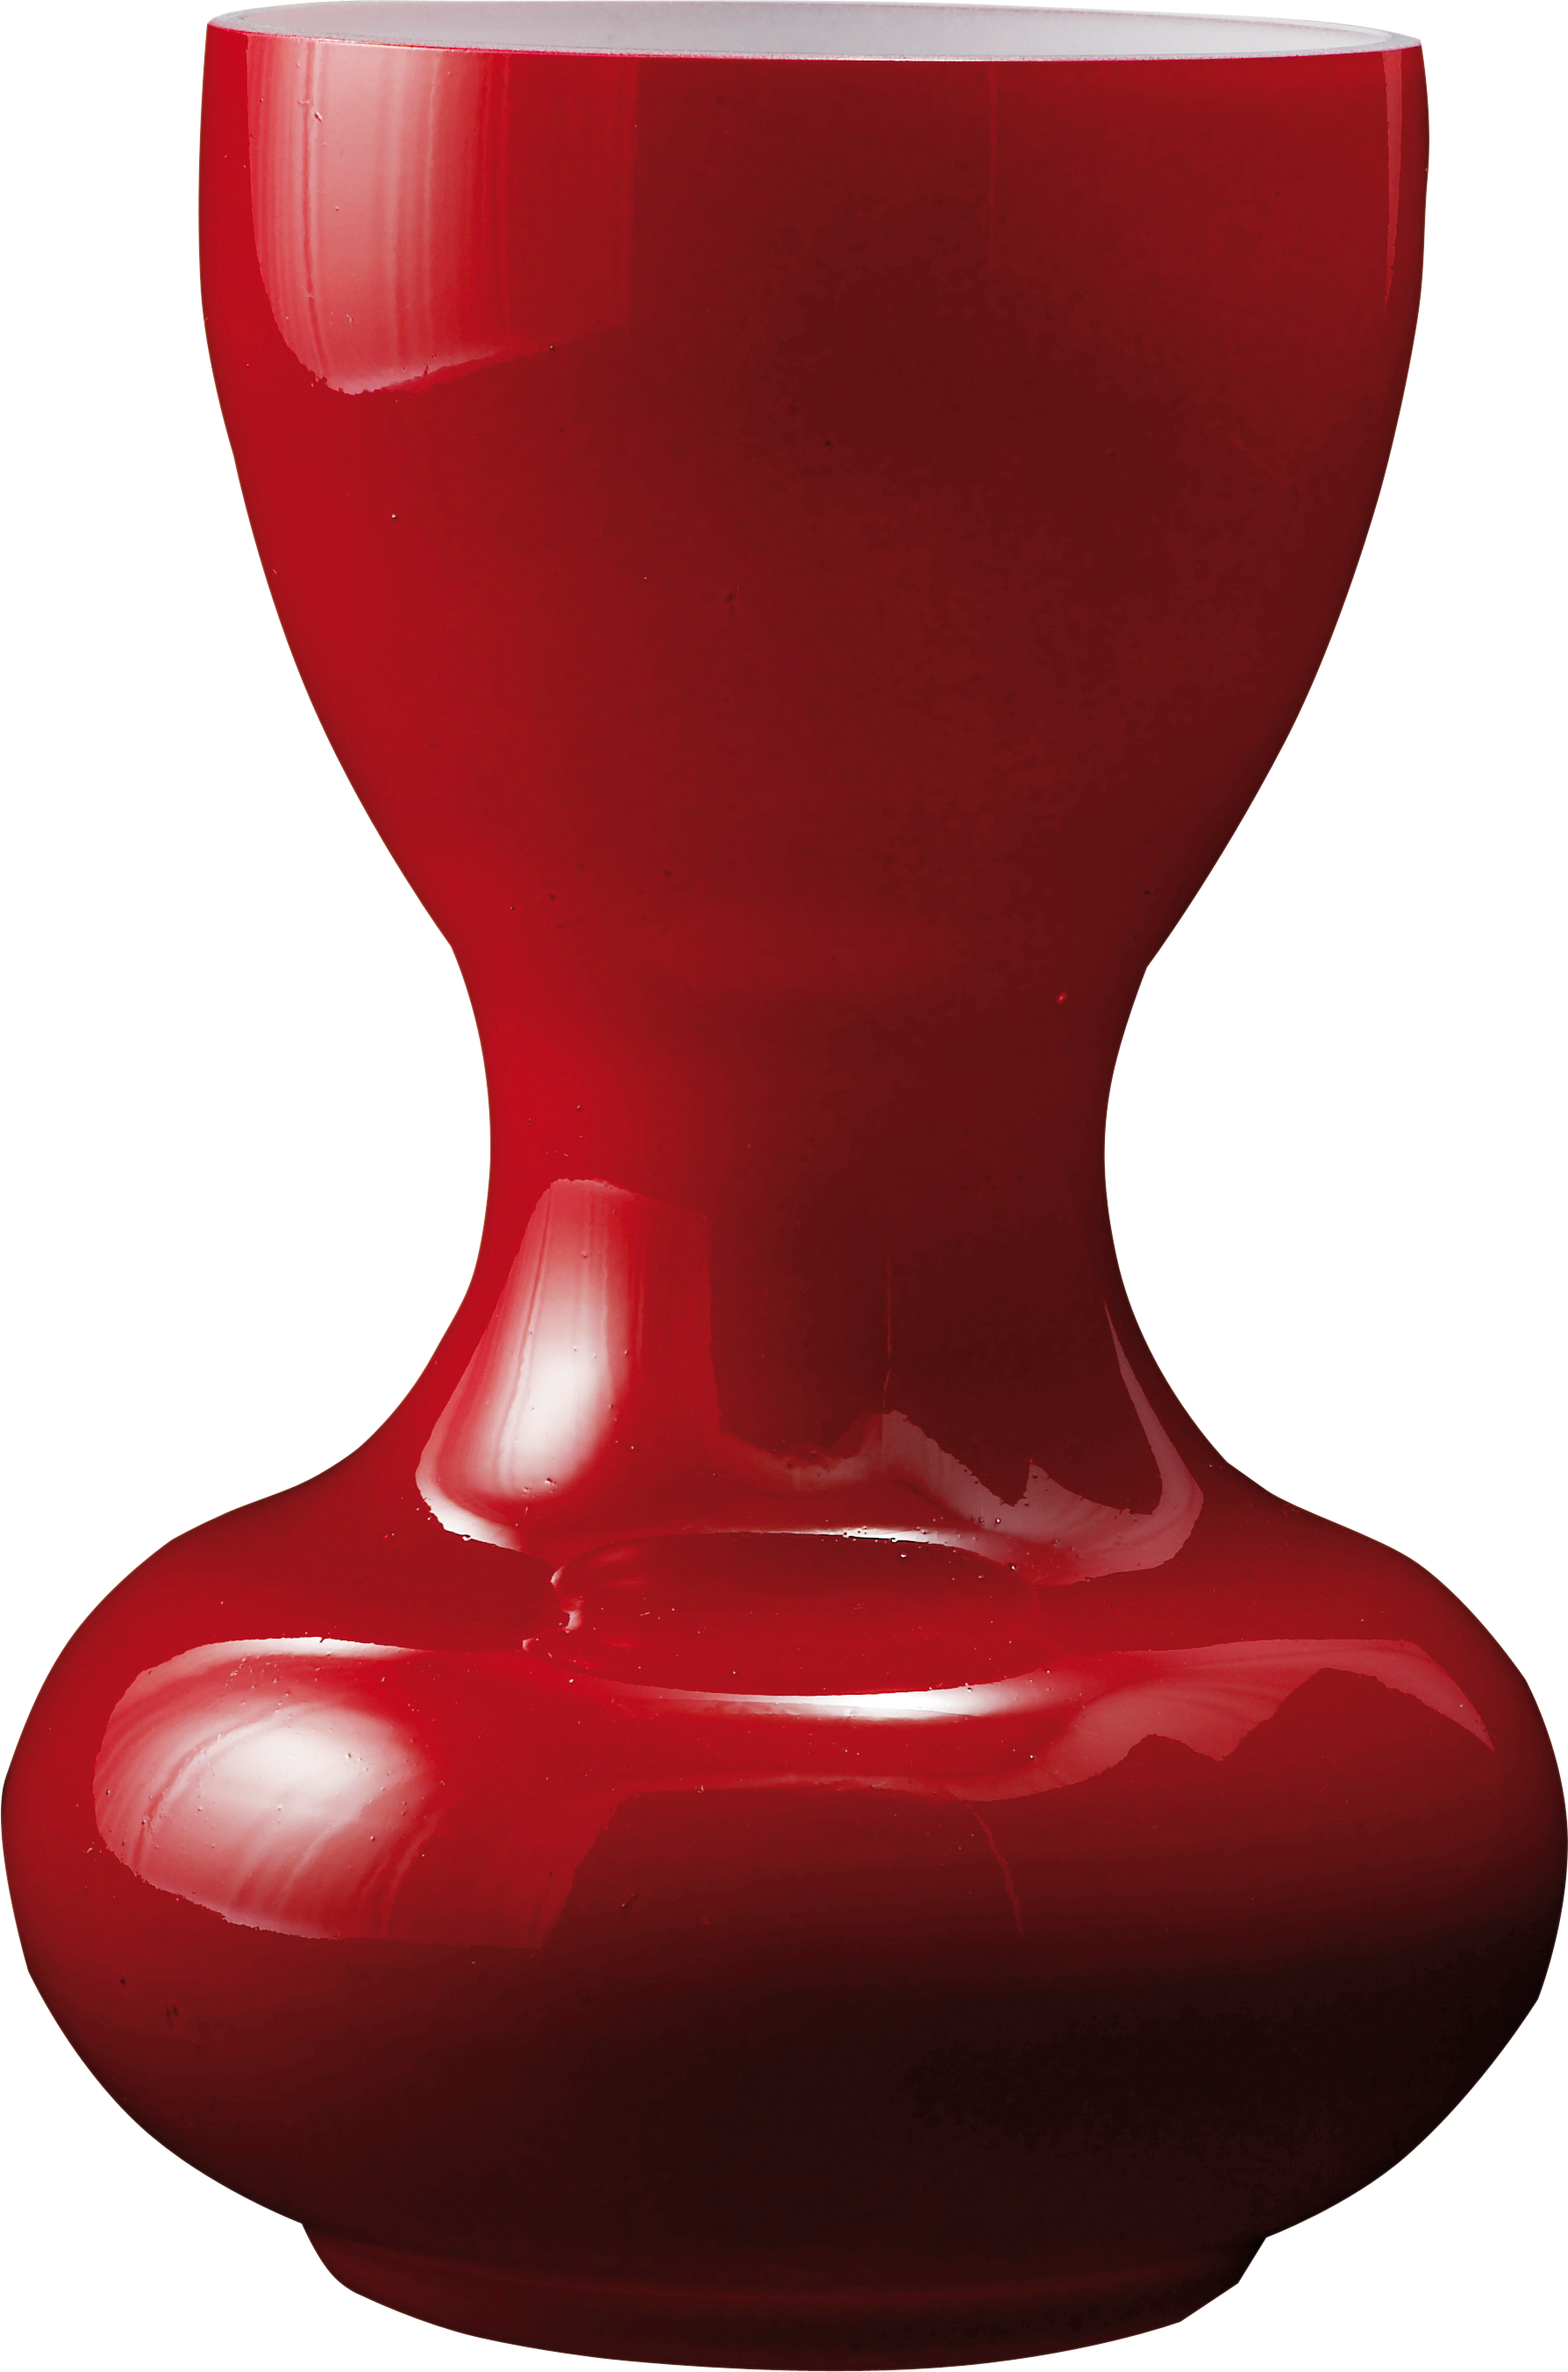 vase clipart handle